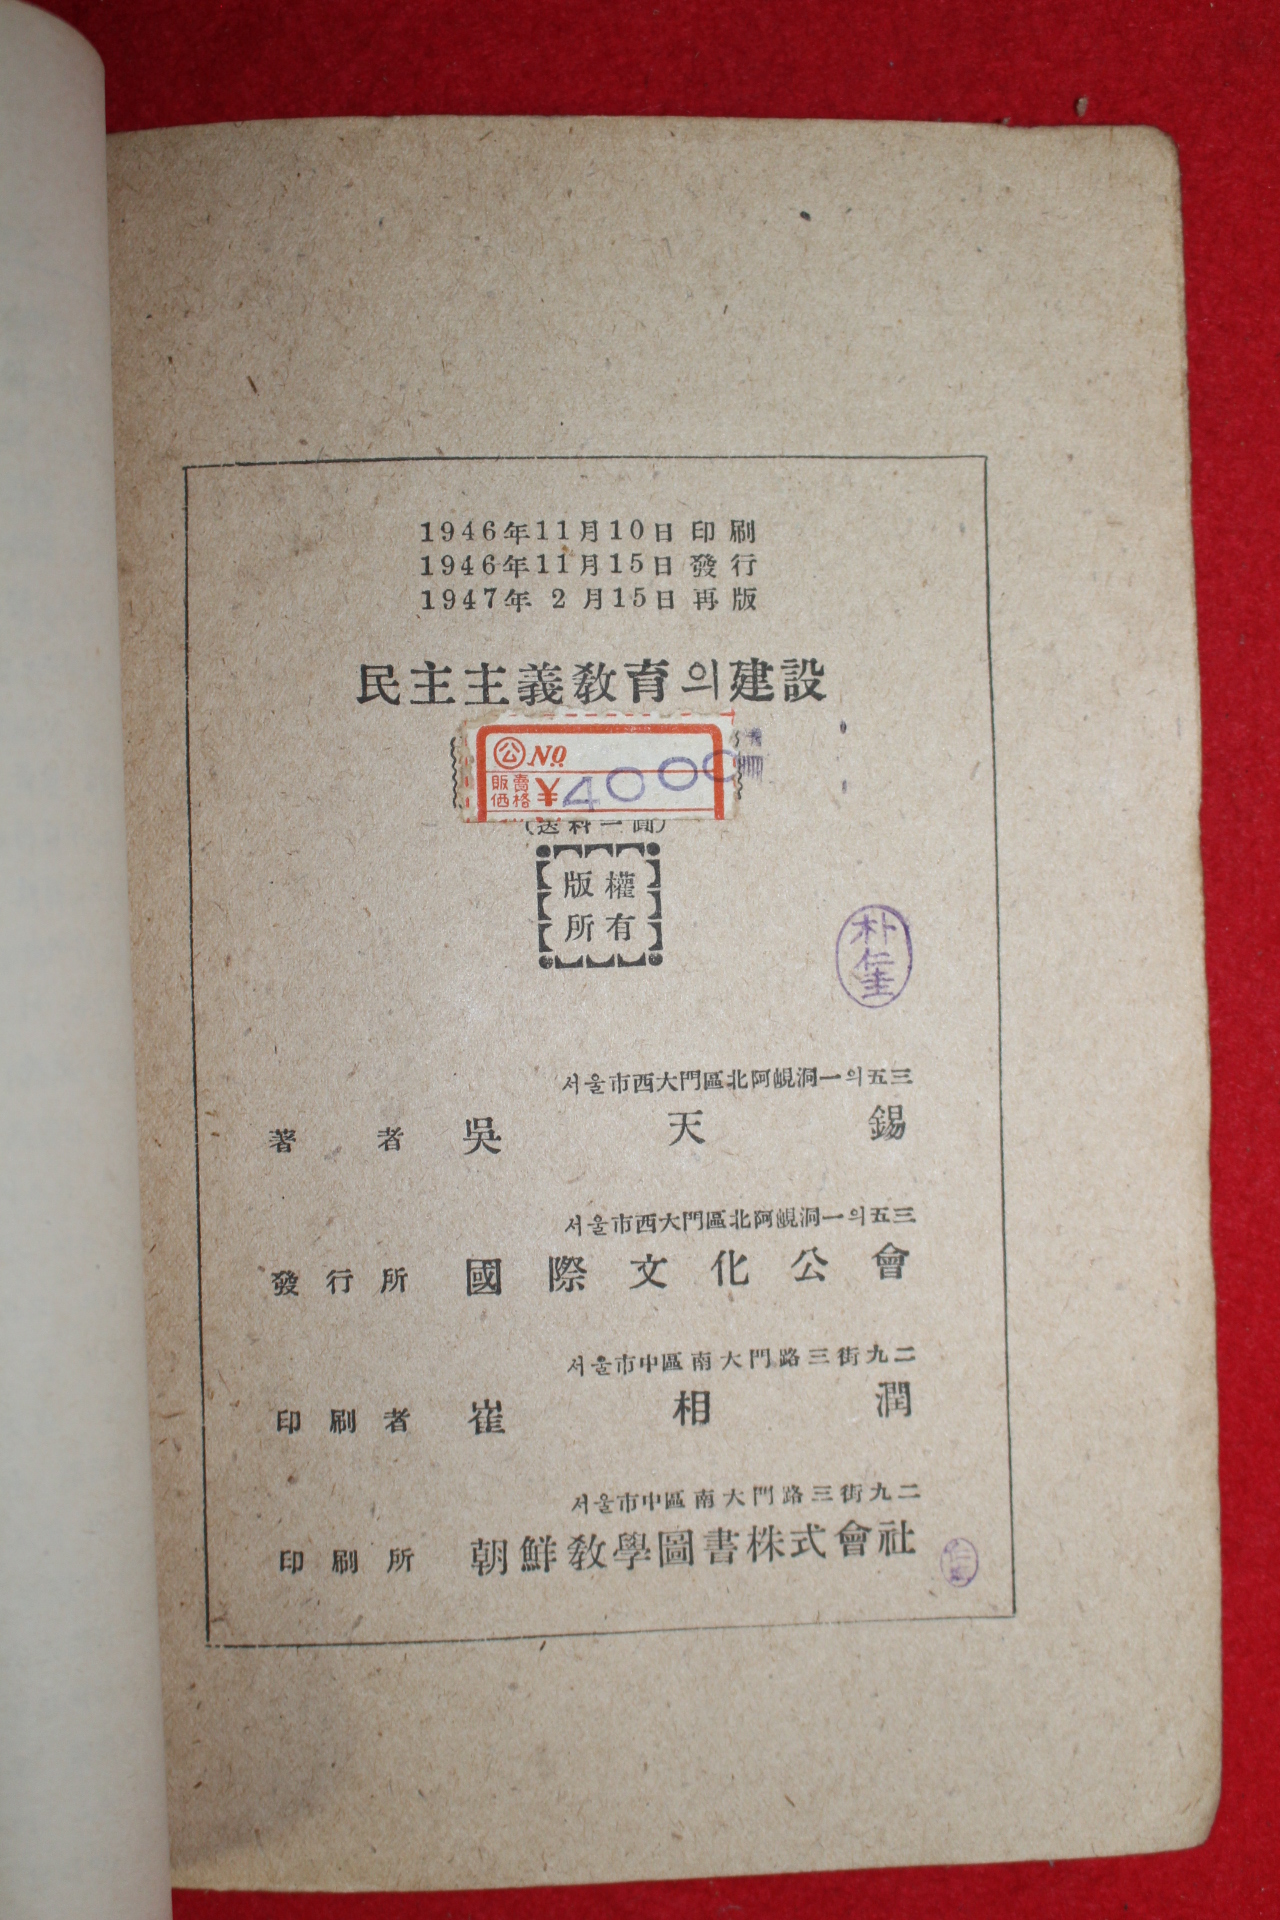 1947년 오천석(吳天錫) 민주주의 교육의 건설